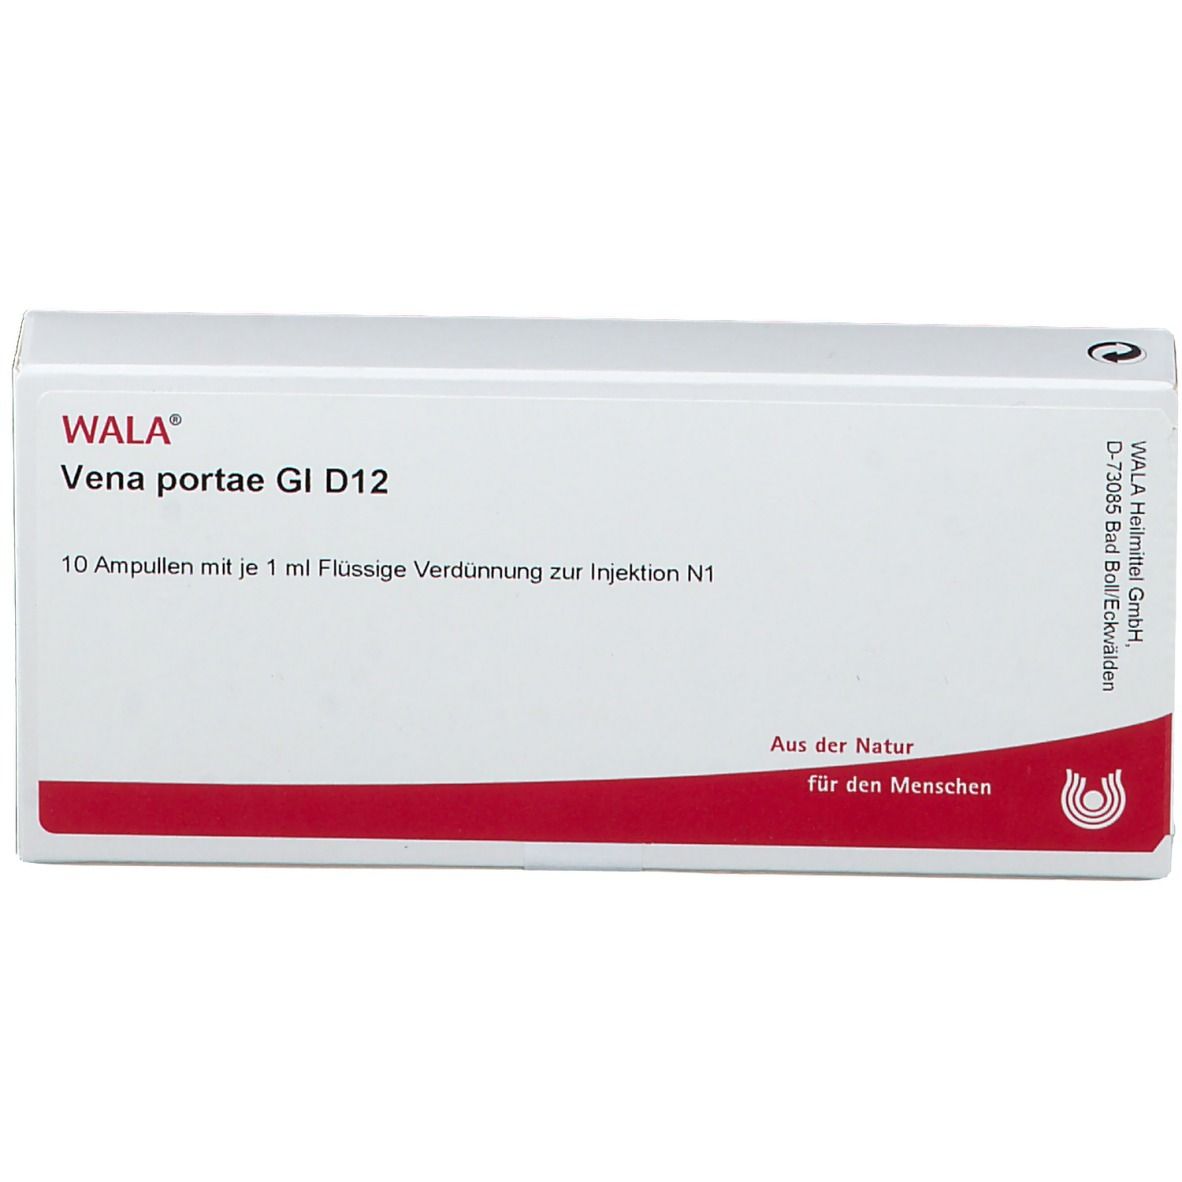 WALA® Vena portae Gl D 12